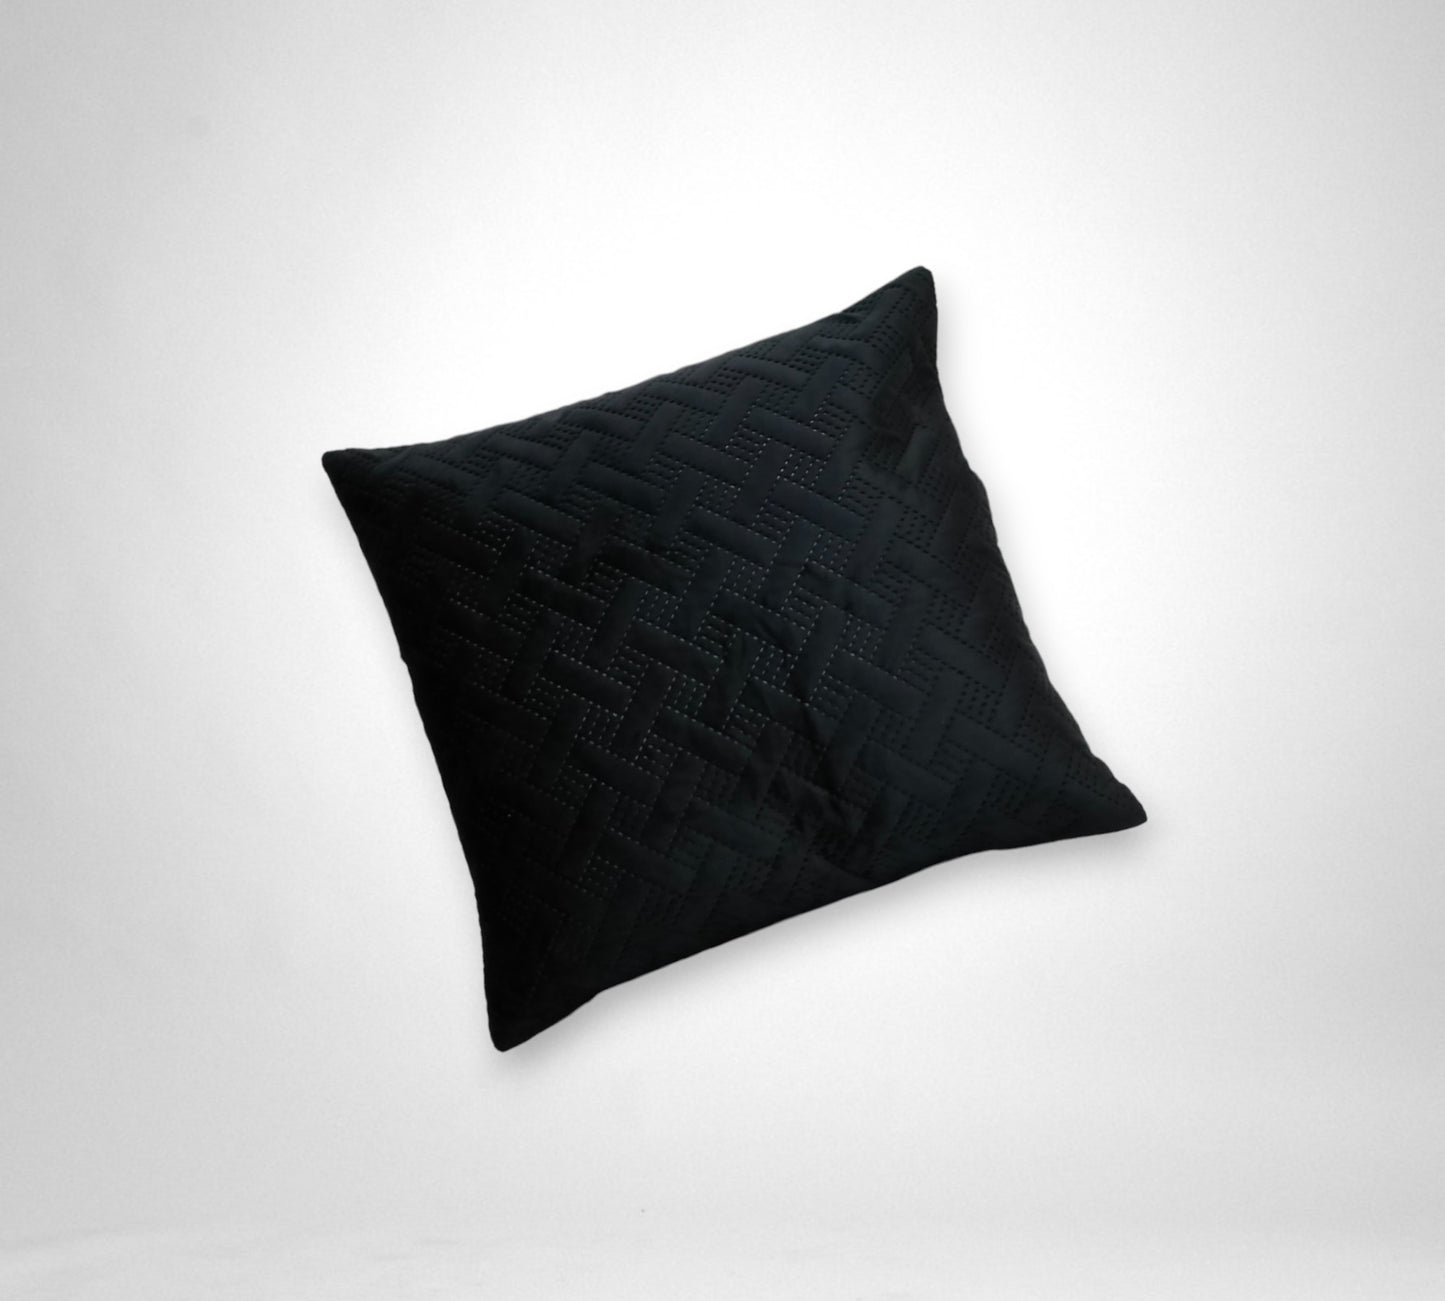 Dekoracy Cushion Cover - QC1